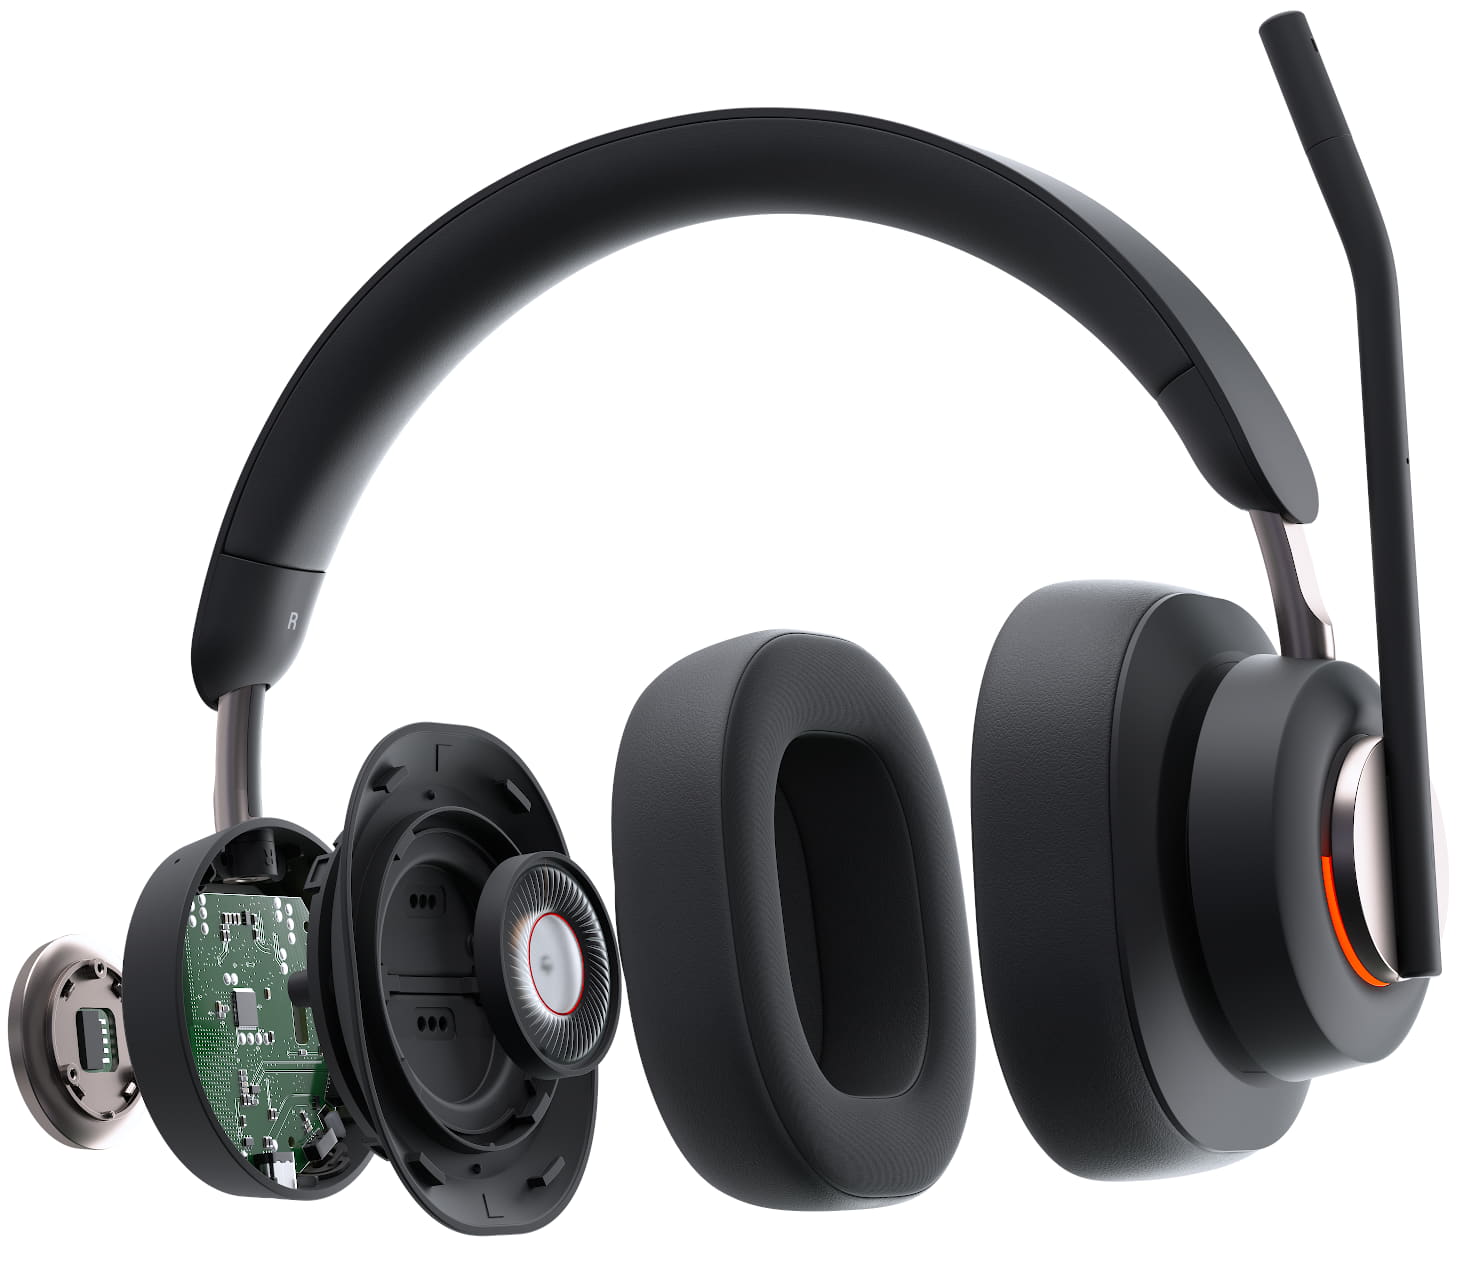 Vollständige Explosionsdarstellung des Kensington H3000 Bluetooth-Over-Ear-Headsets mit KI-gesteuerter Noise-Cancelling-Technologie für Umgebungsgeräusche, passiver Noise Cancelling-Technologie und 40-mm-Neodym-Treibern
                                    